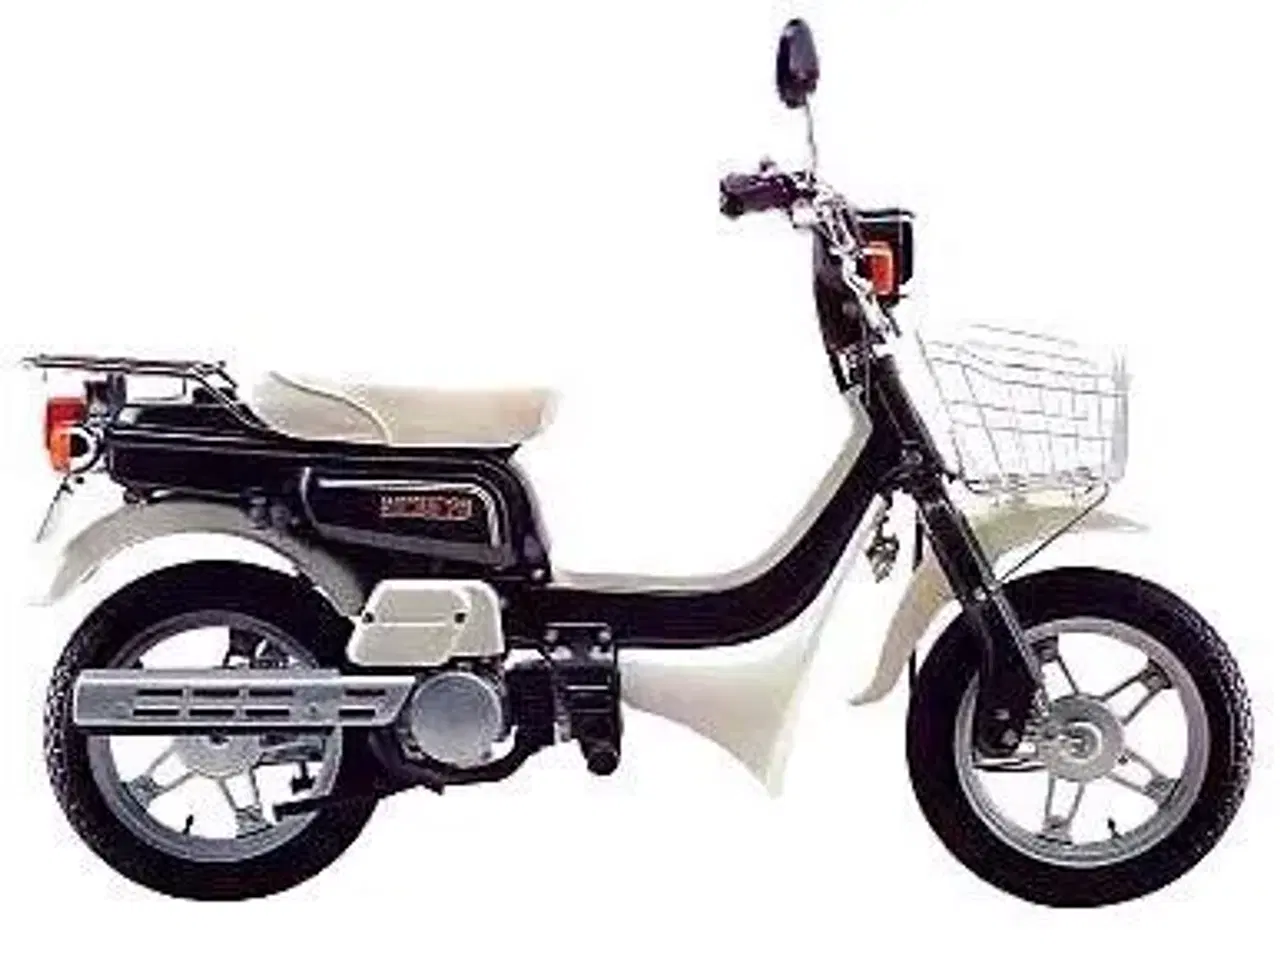 Billede 1 - Søger Suzuki fz50